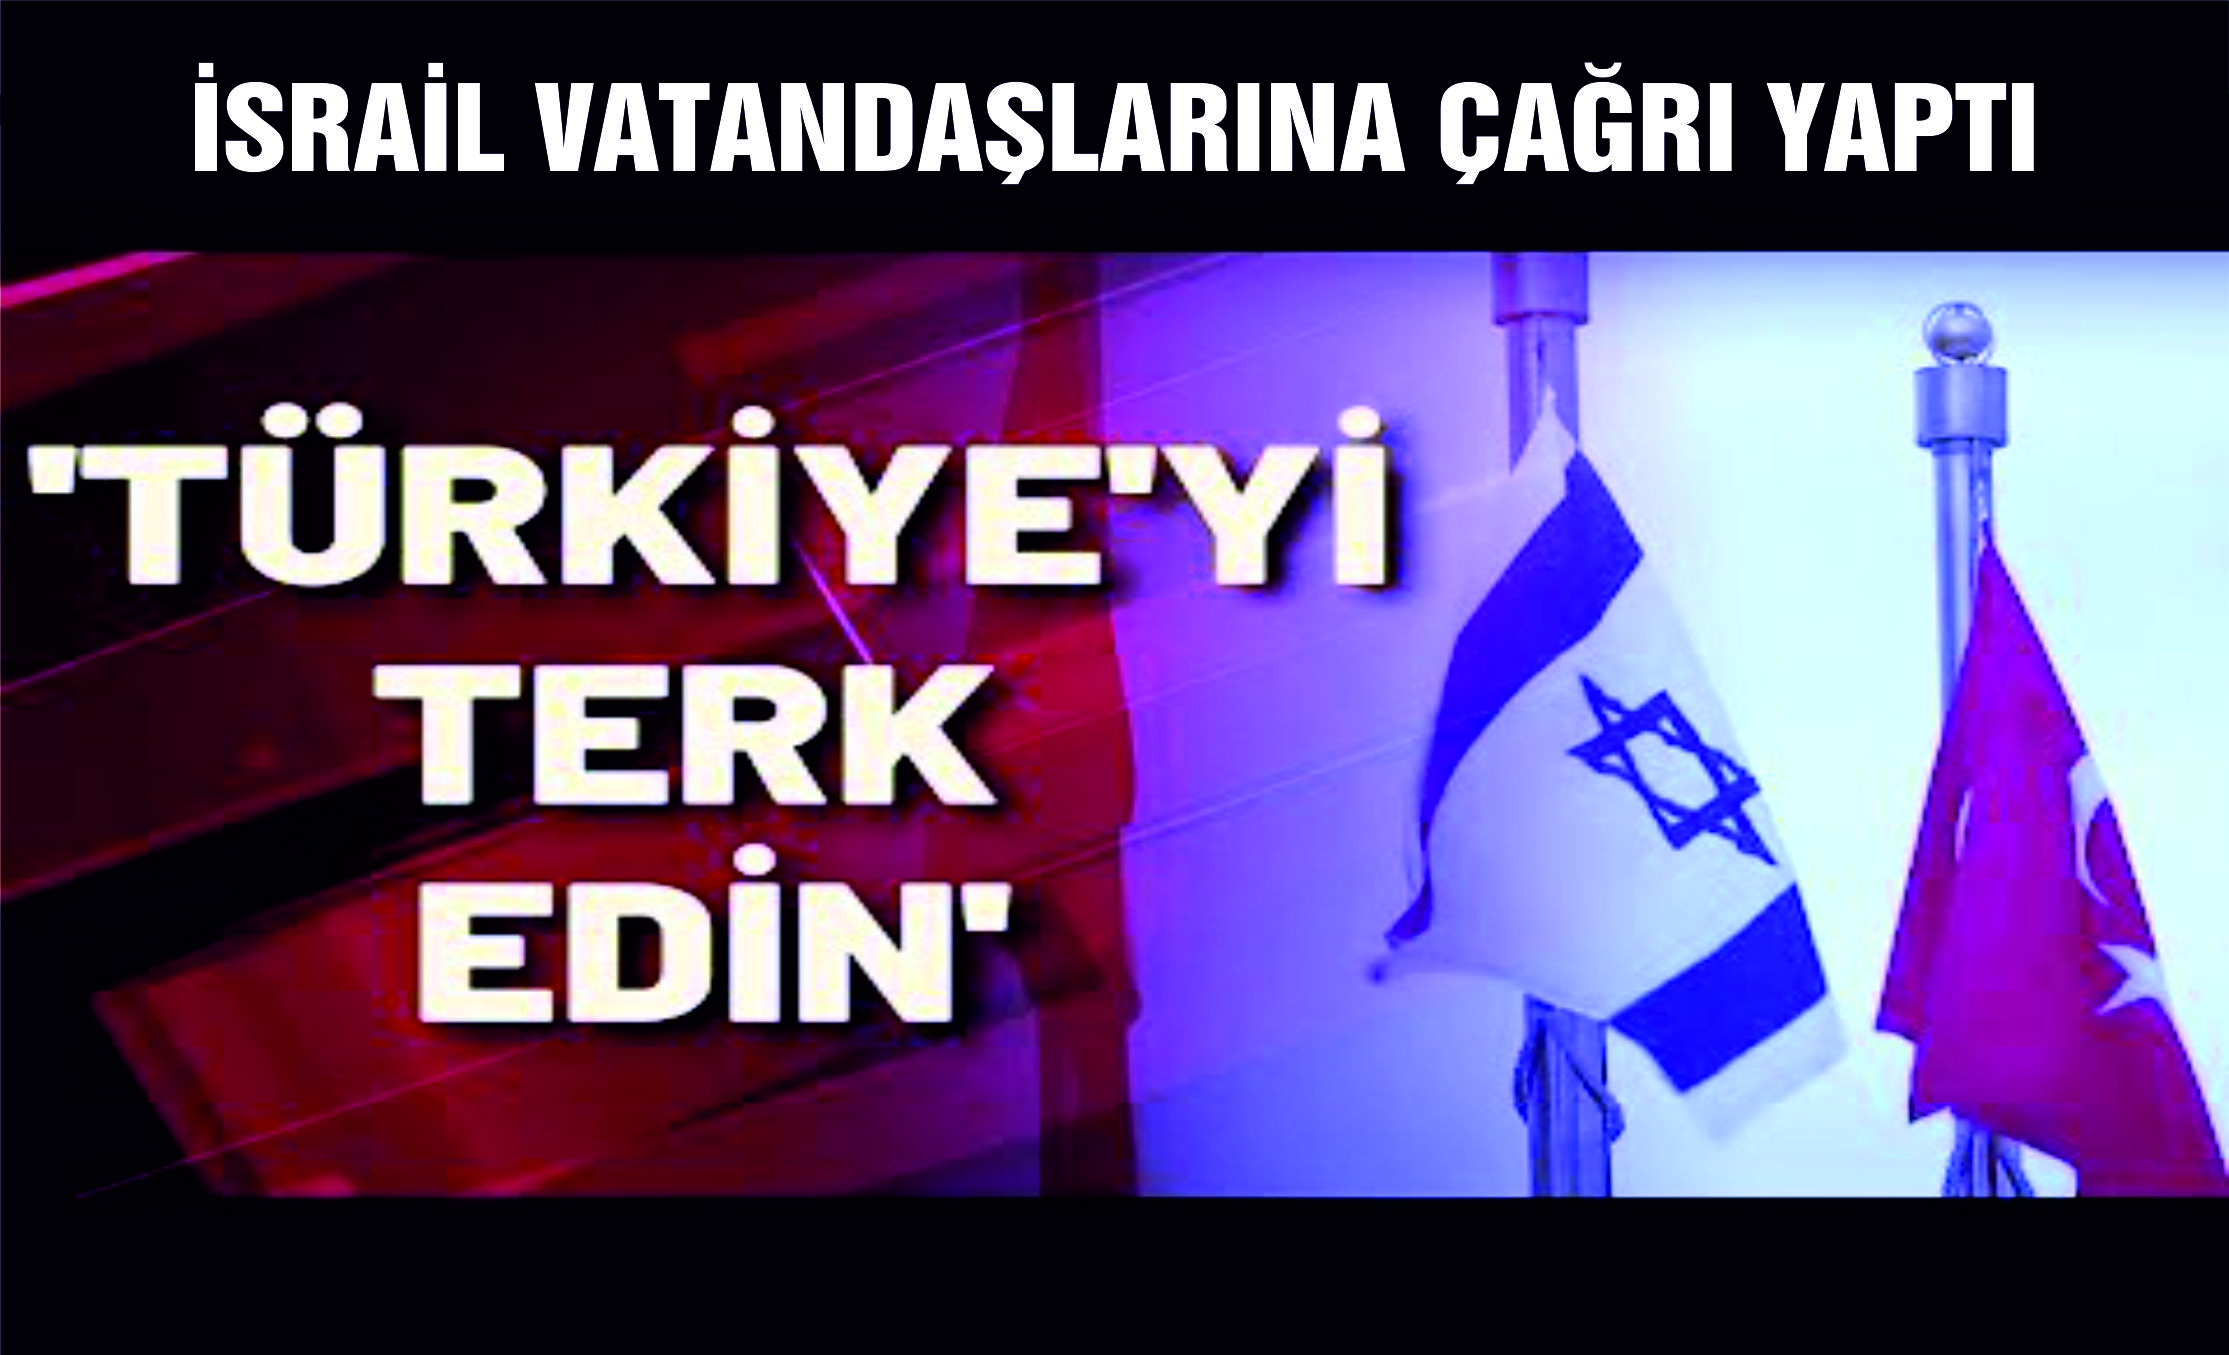 İsrail’den vatandaşlarına Türkiye’yi Terk edin çağrısı